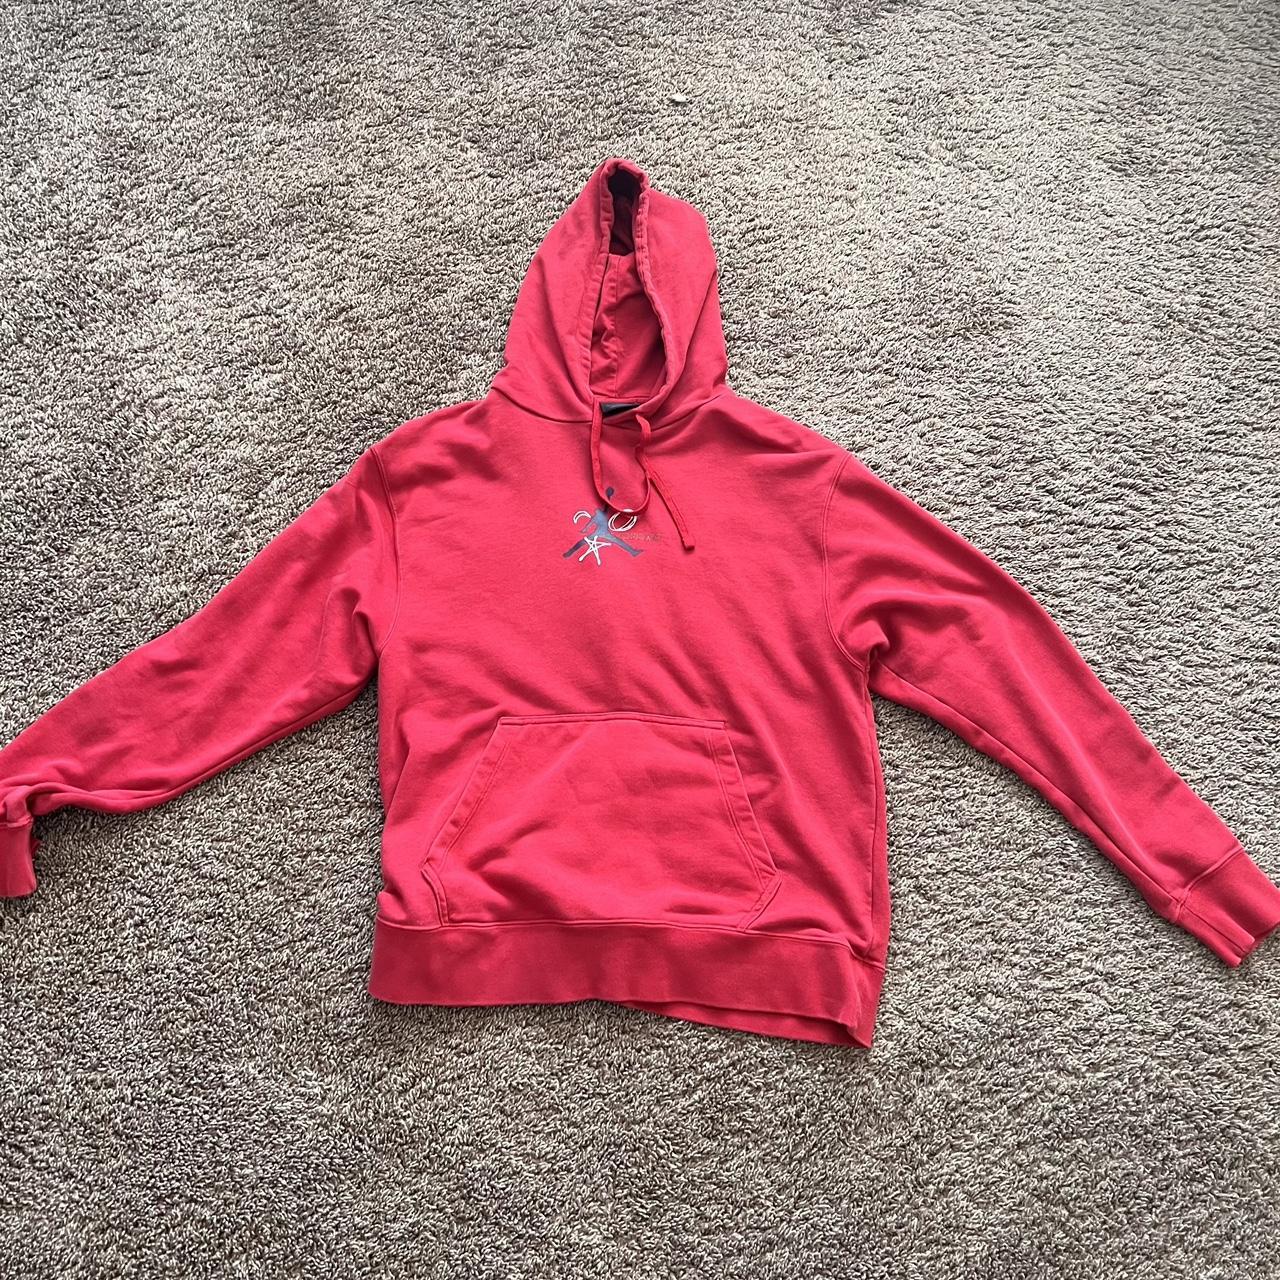 Red Jordan hoodie - Depop